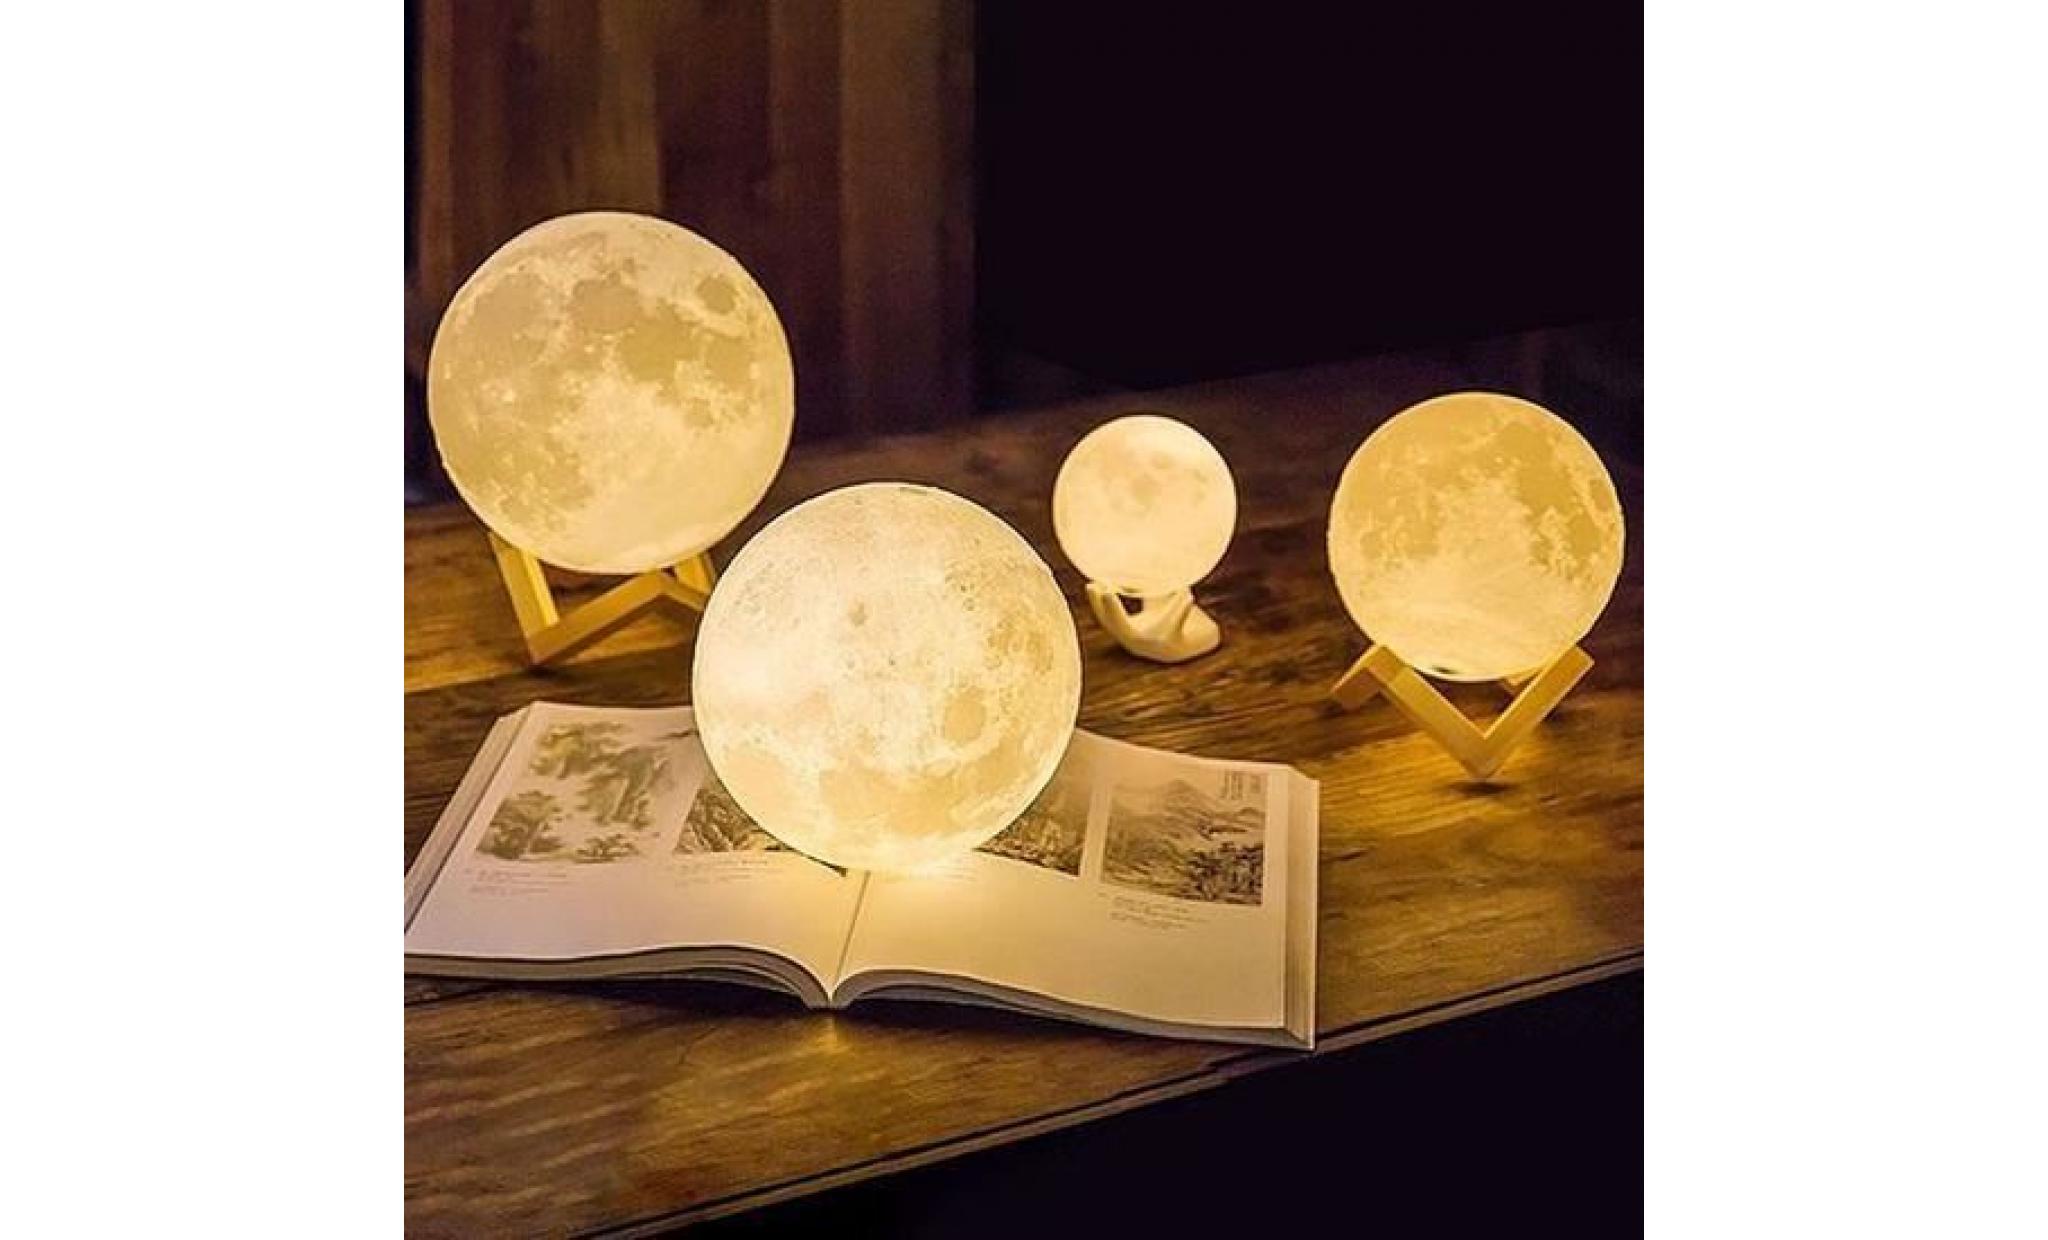 lampe de lune 10cm   lune imprimée en 3d   meilleur cadeau pour les enfants, amis, amants   avec usb et support en bois